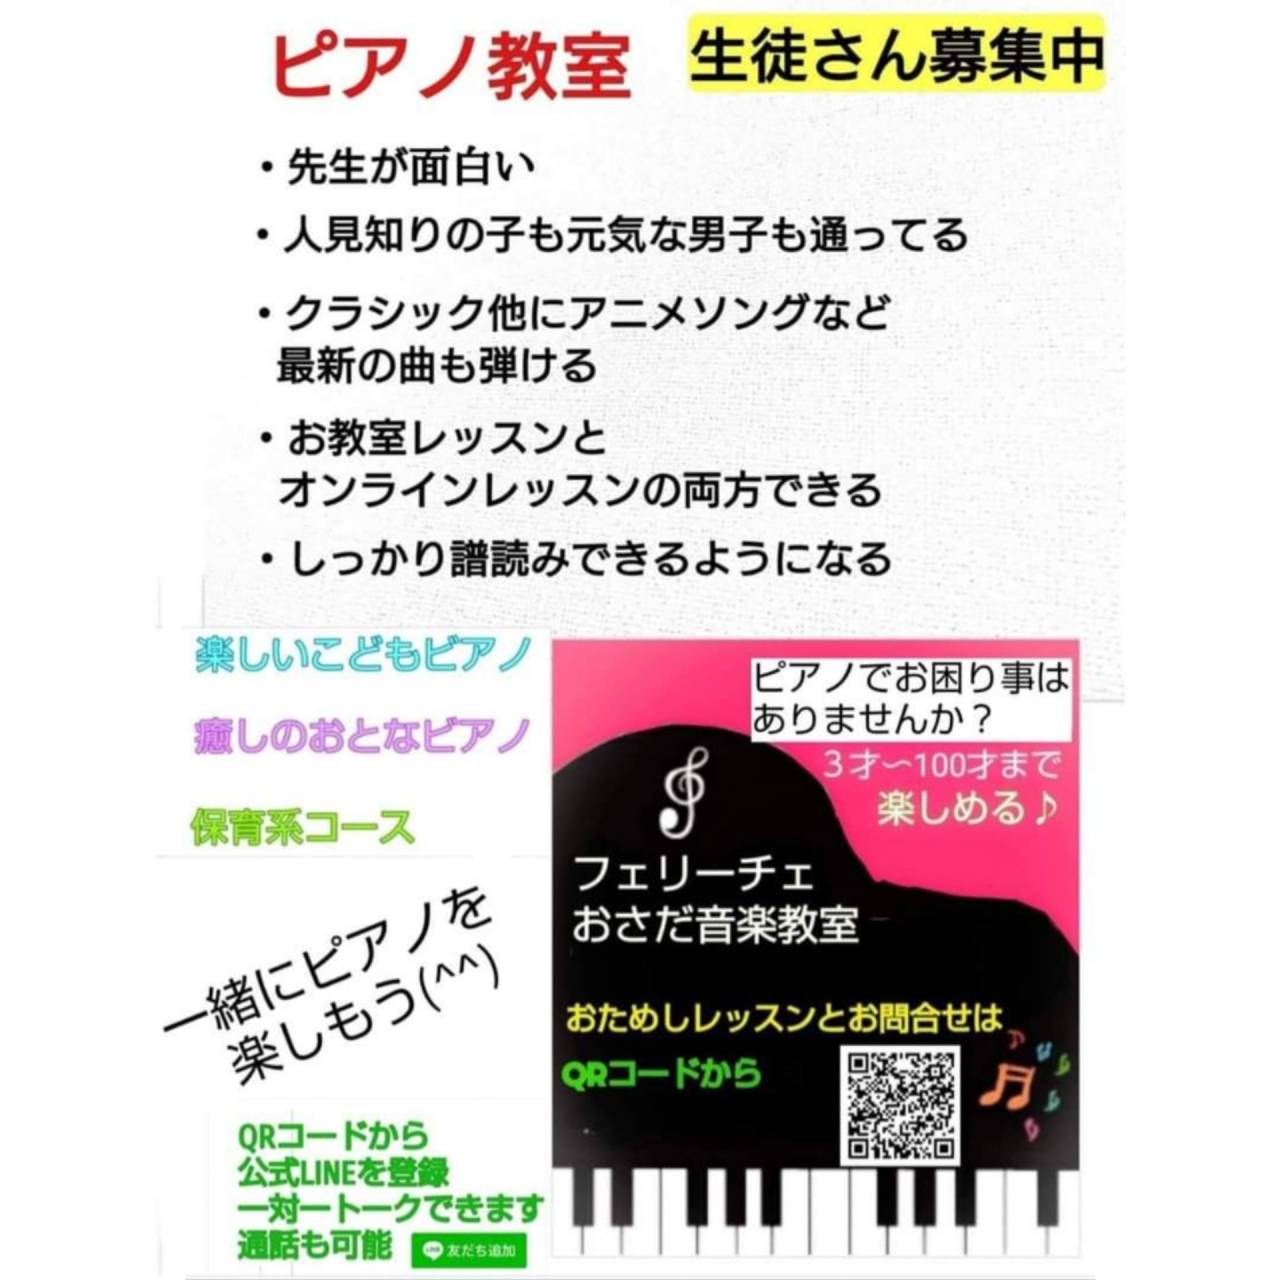 富士市の大人ピアノ教室で癒やされてみませんか?